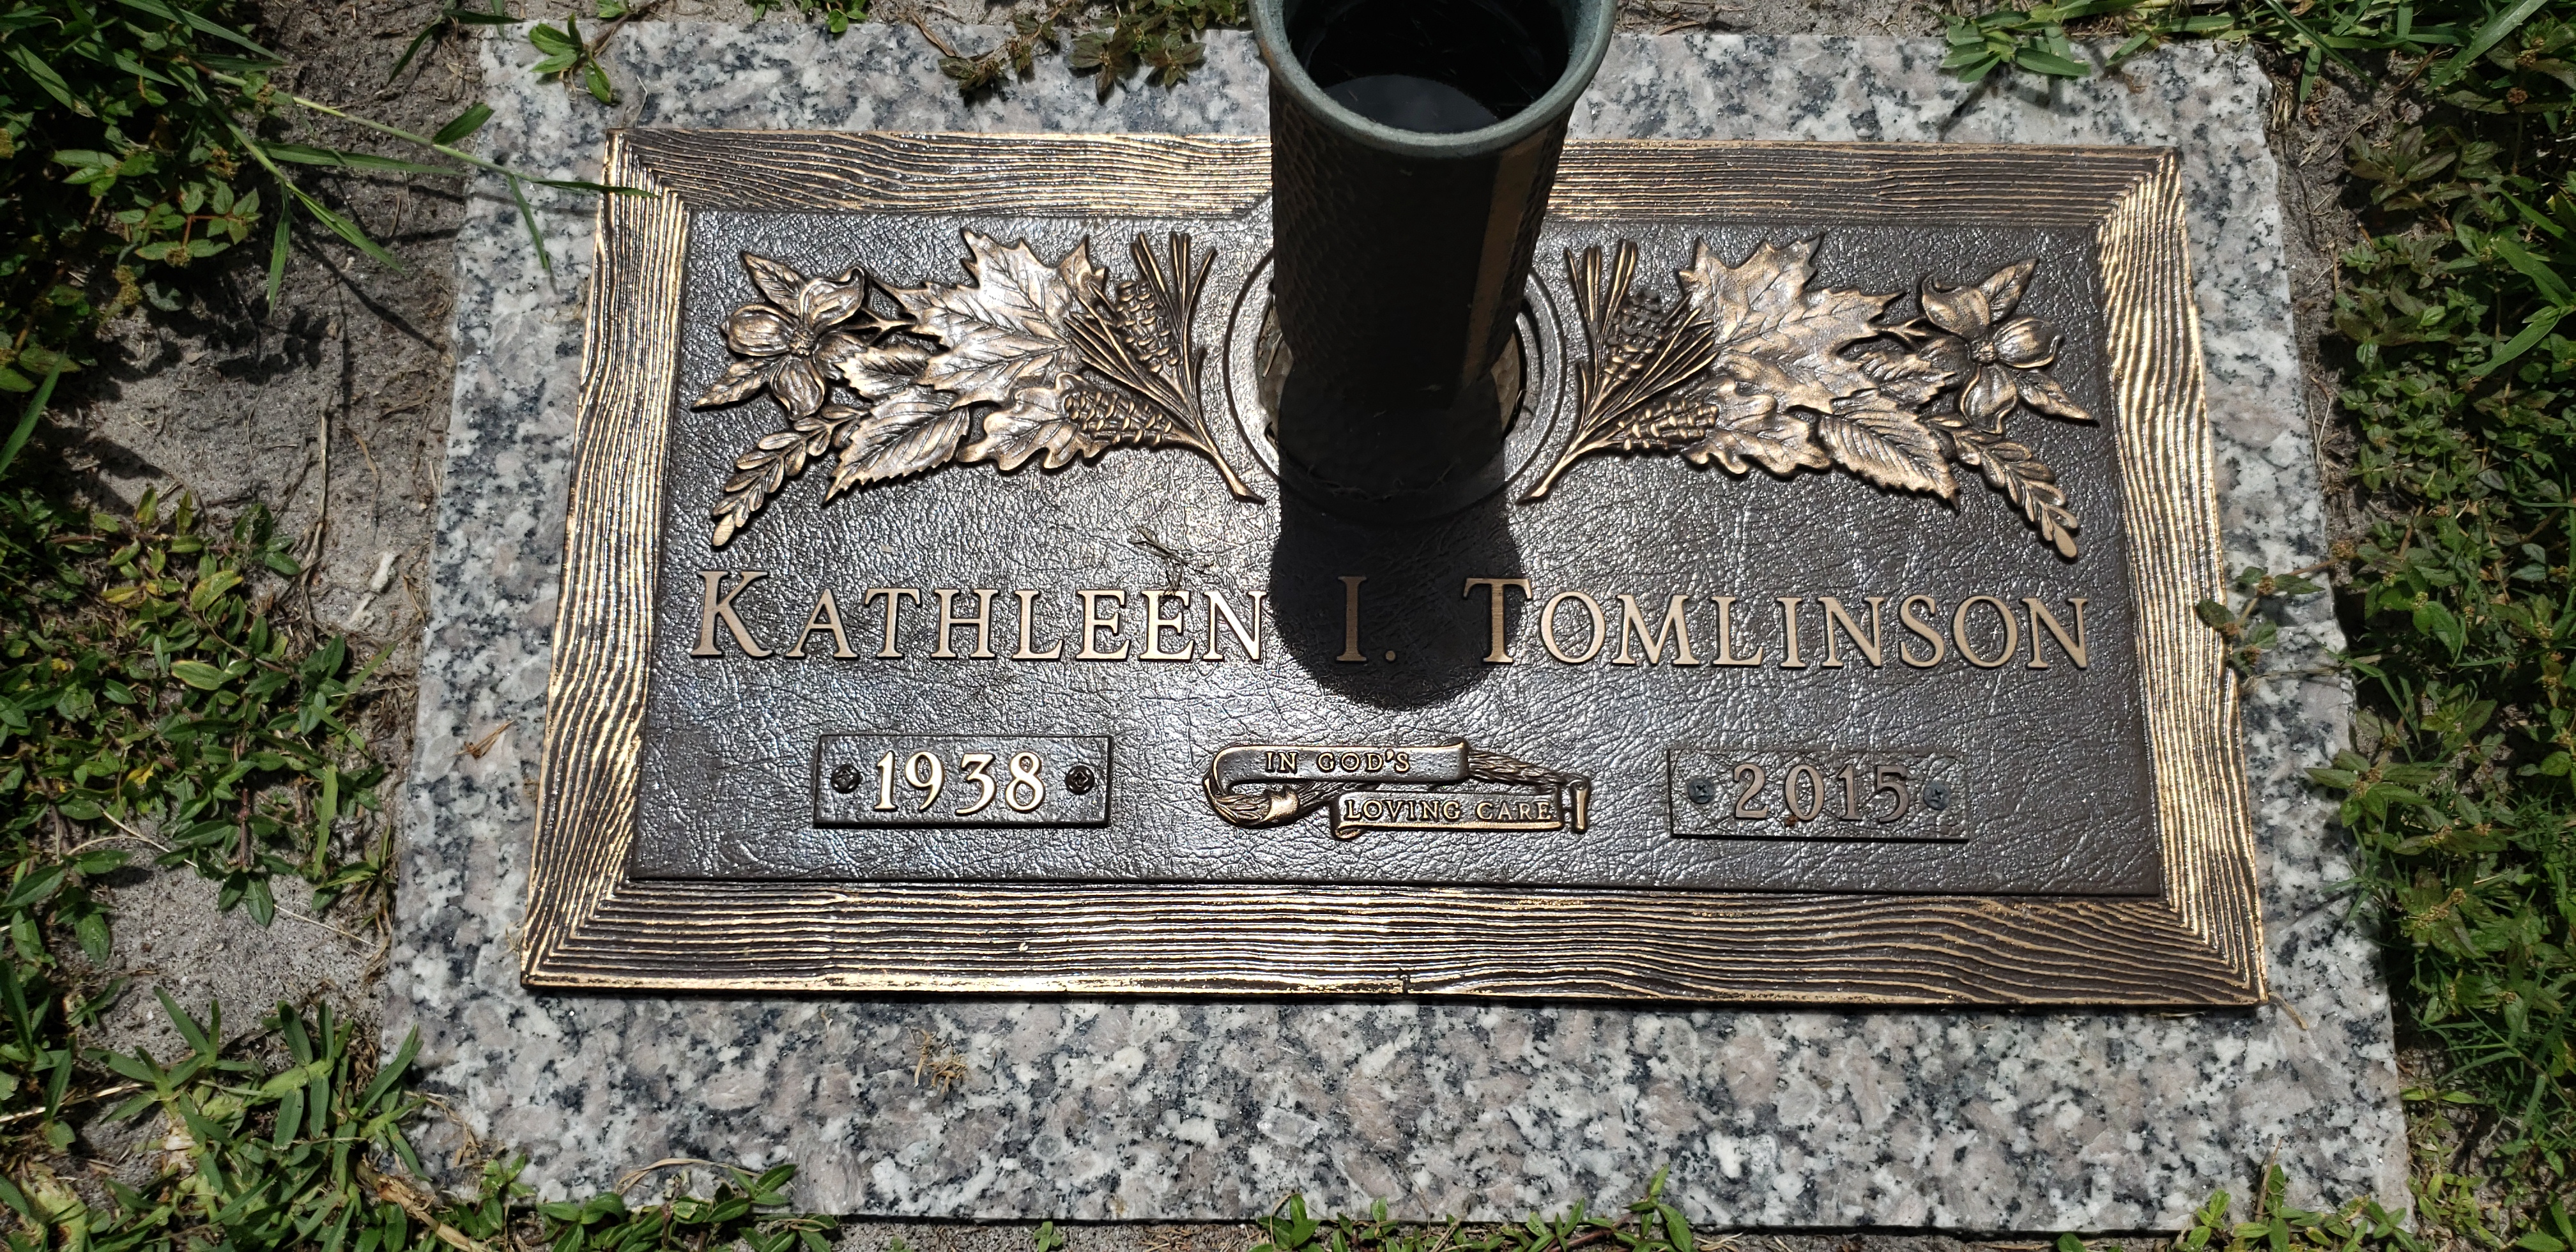 Kathleen I Tomlinson